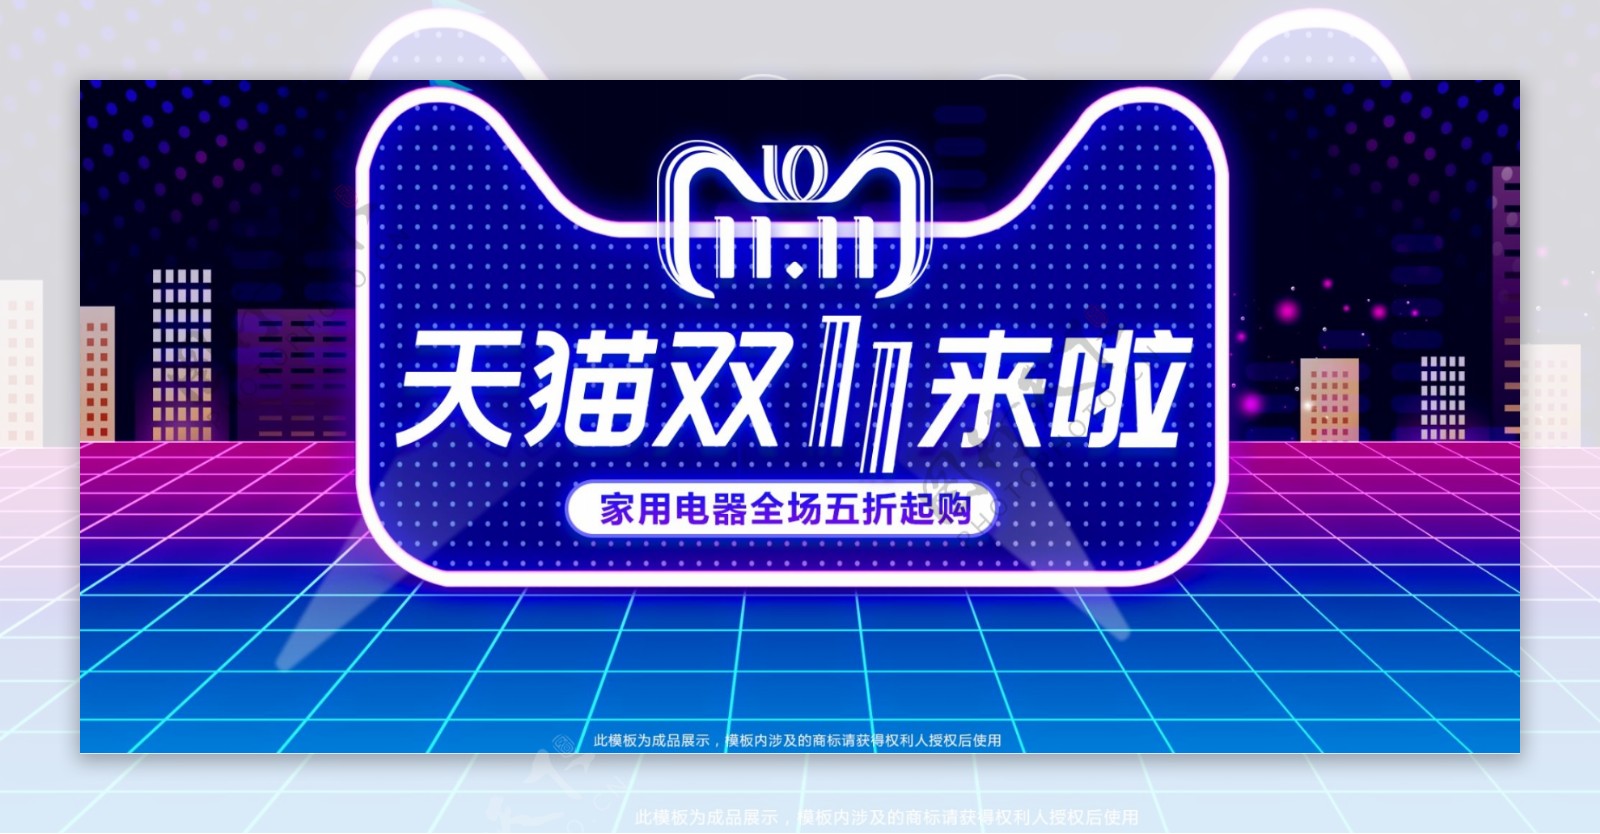 天猫双十一狂欢节电器数码海报banner